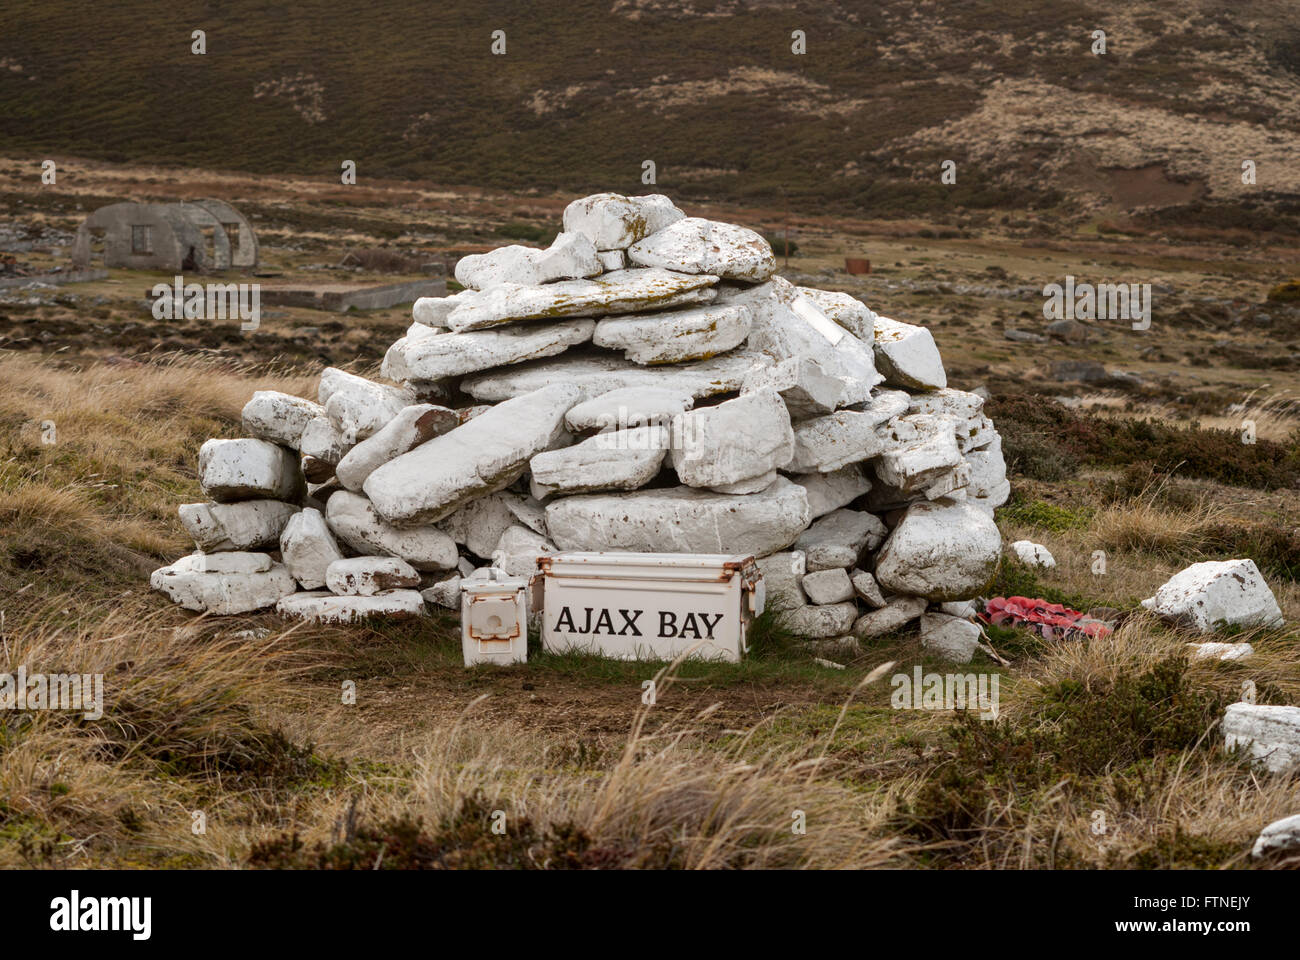 La baie d'Ajax Ajax à cairn commémoratif, l'eau de la baie de San Carlos, East Falkland, îles Malouines, l'Amérique du Sud Banque D'Images